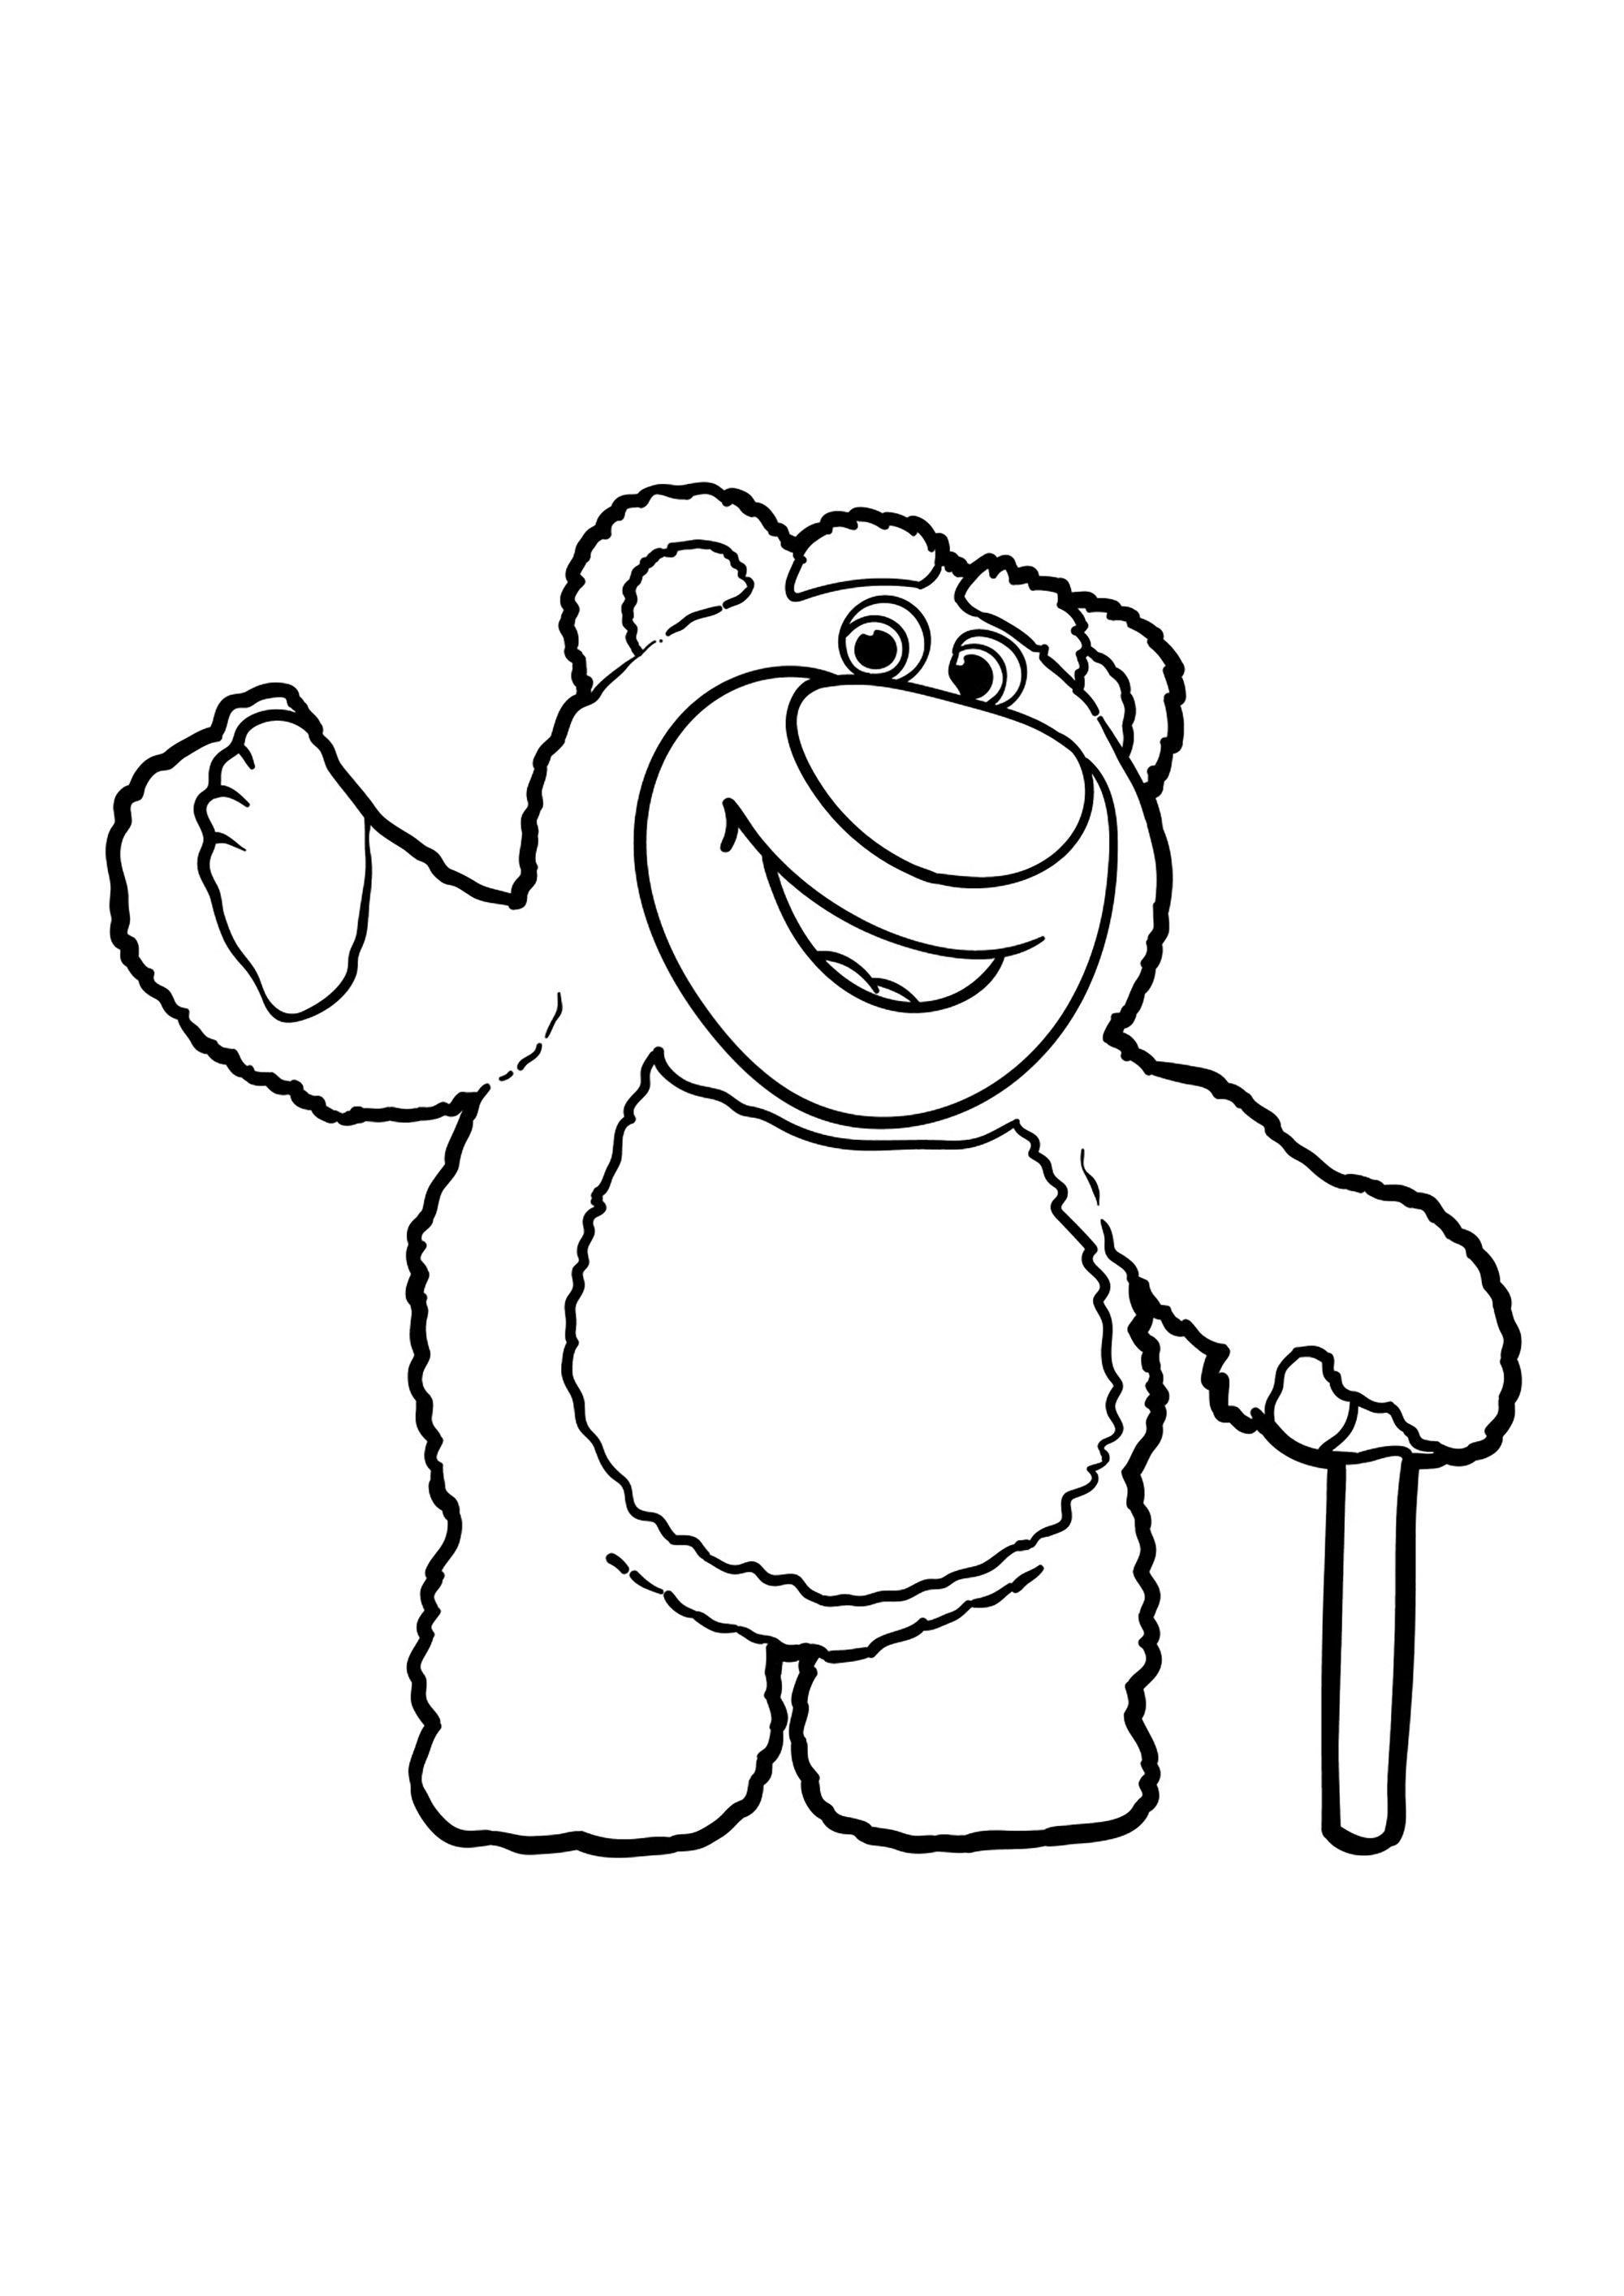 Lotso, o urso cor-de-rosa malvado de Toy Story 3. Não hesite em acrescentar pormenores adicionais ao urso, como riscas, manchas ou padrões, para dar um toque pessoal à sua criação.